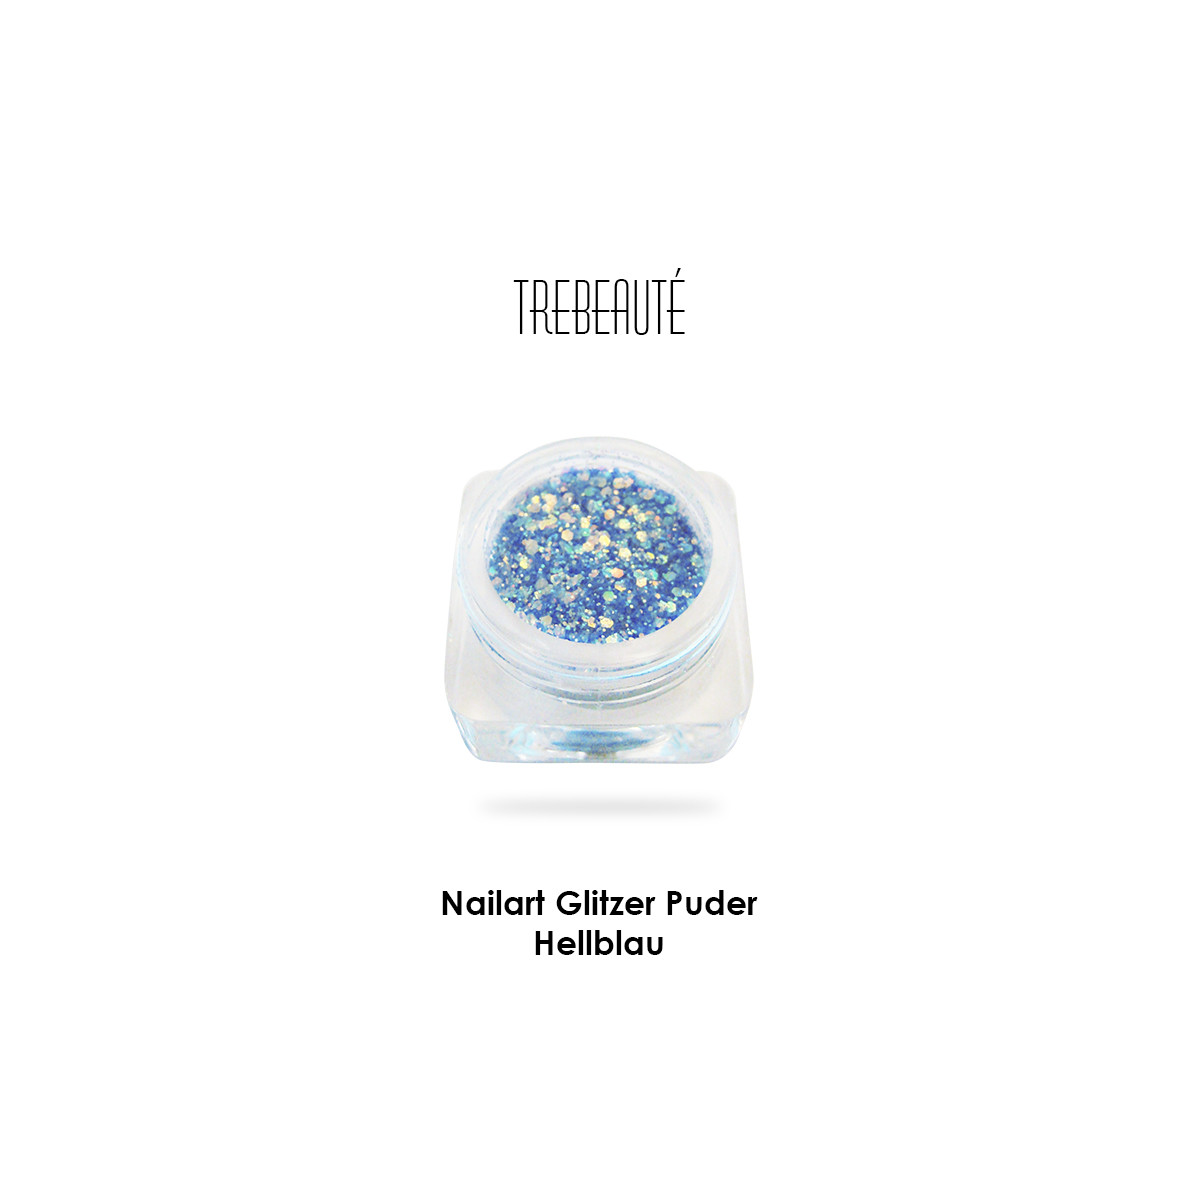 Nailart Glitzer Puder & Glitterstaub, Hellblau